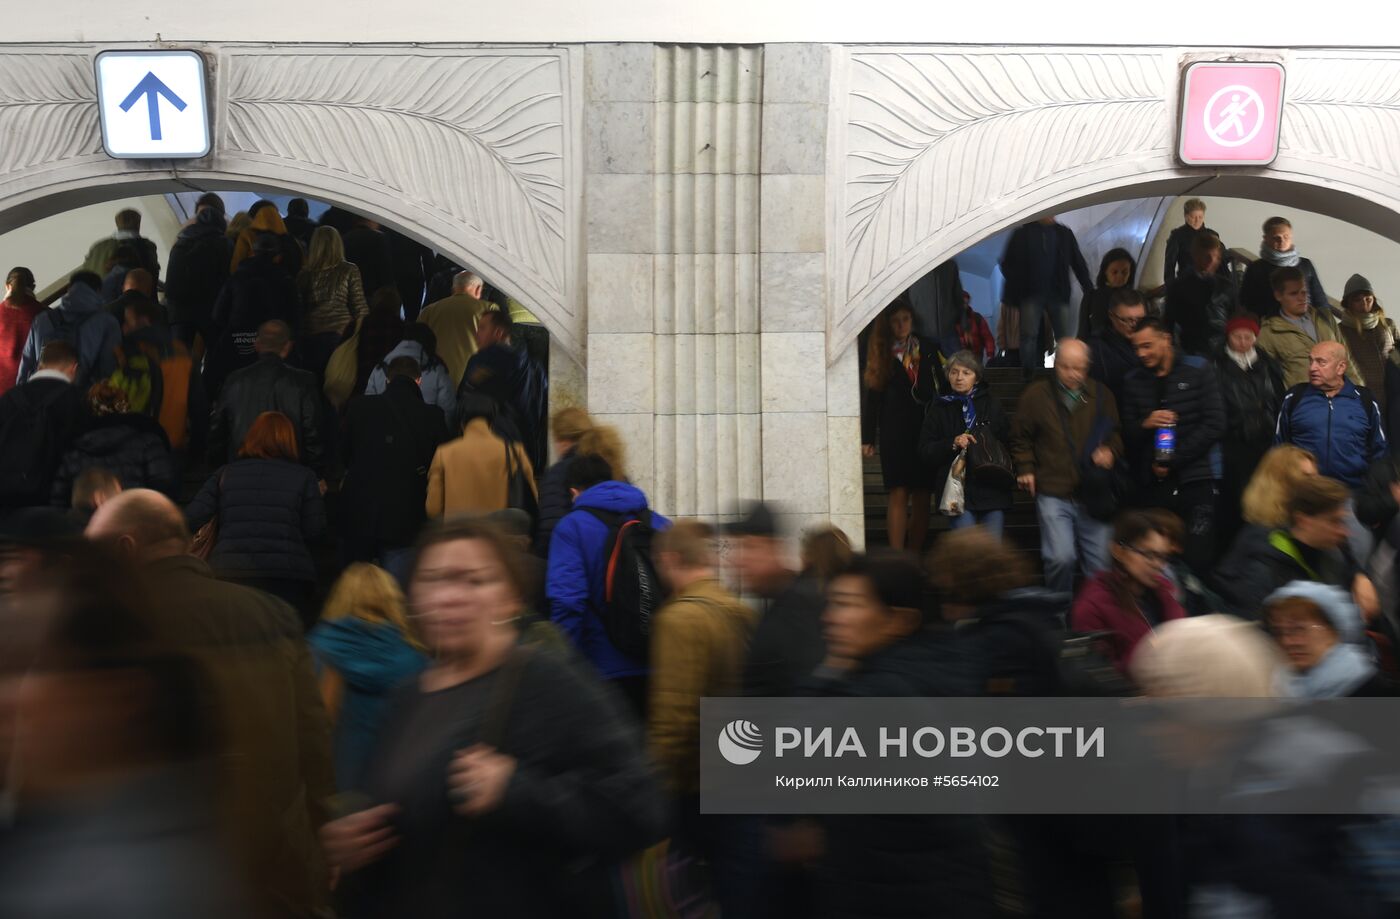 Обновление навигации в московском метро